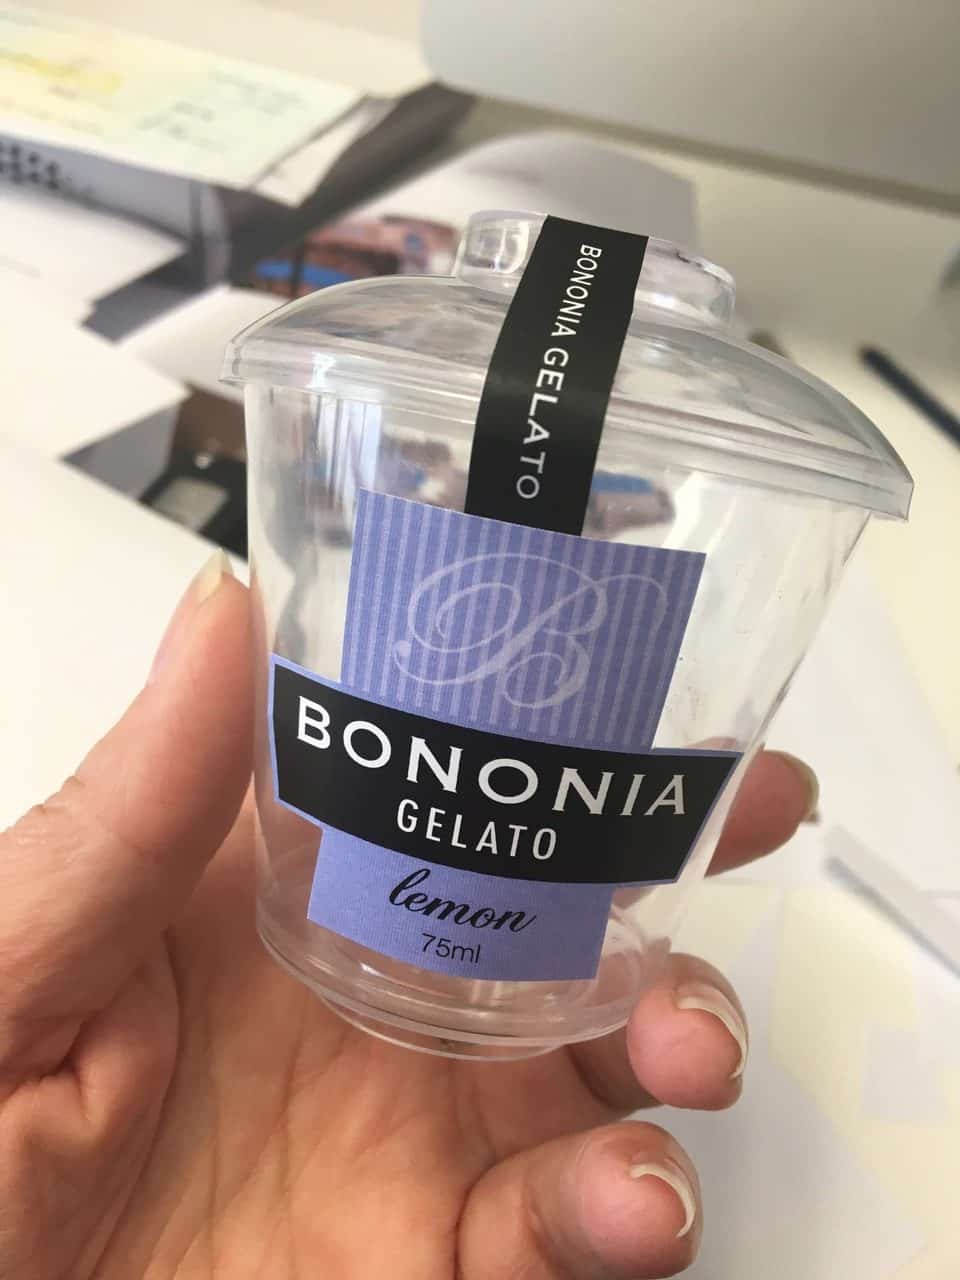 Bononia Gelato